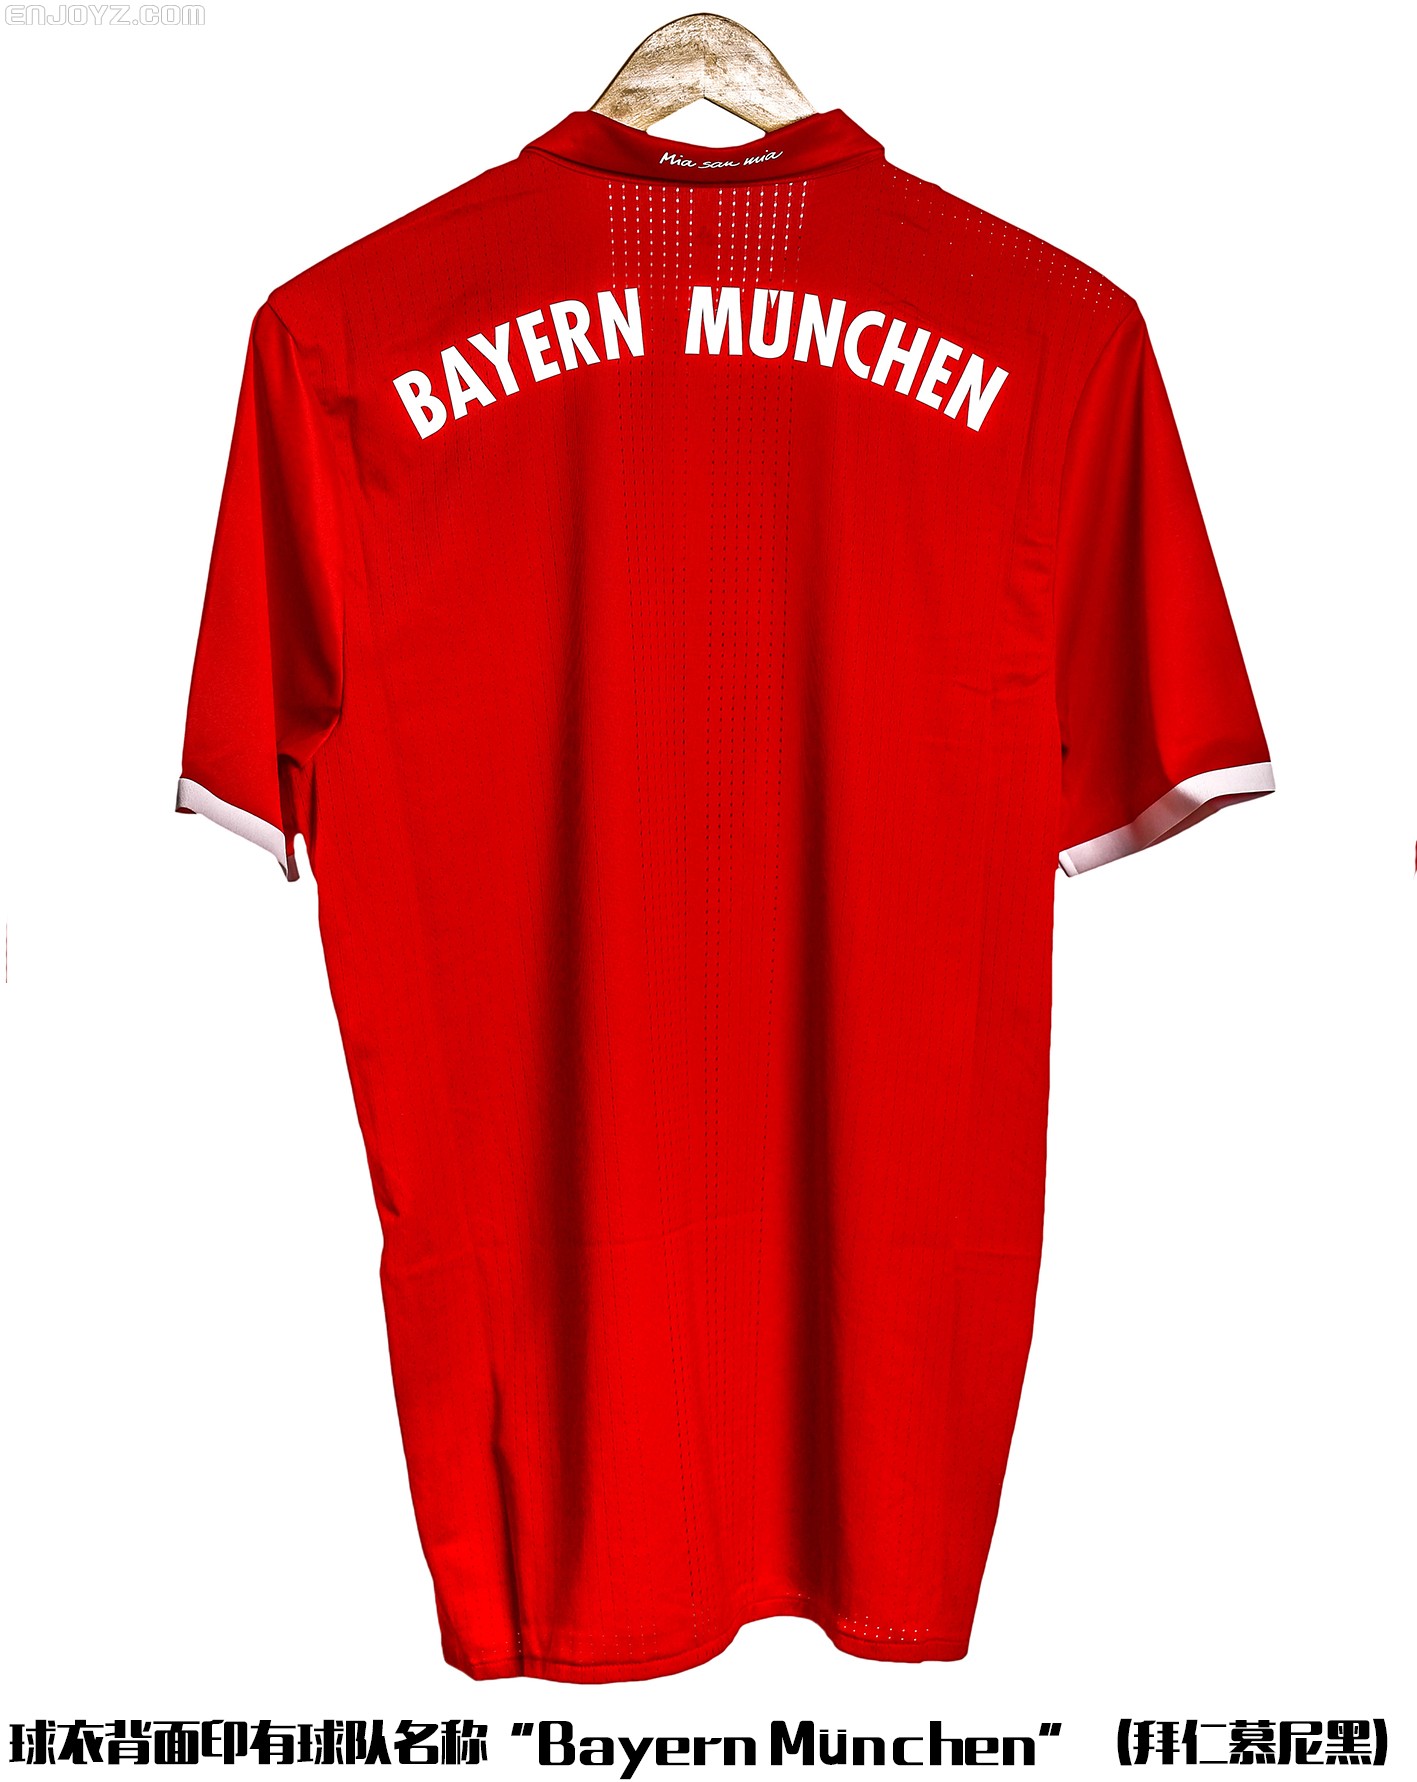 拜仁慕尼黑2018-19赛季主场球衣 , 球衫堂 kitstown